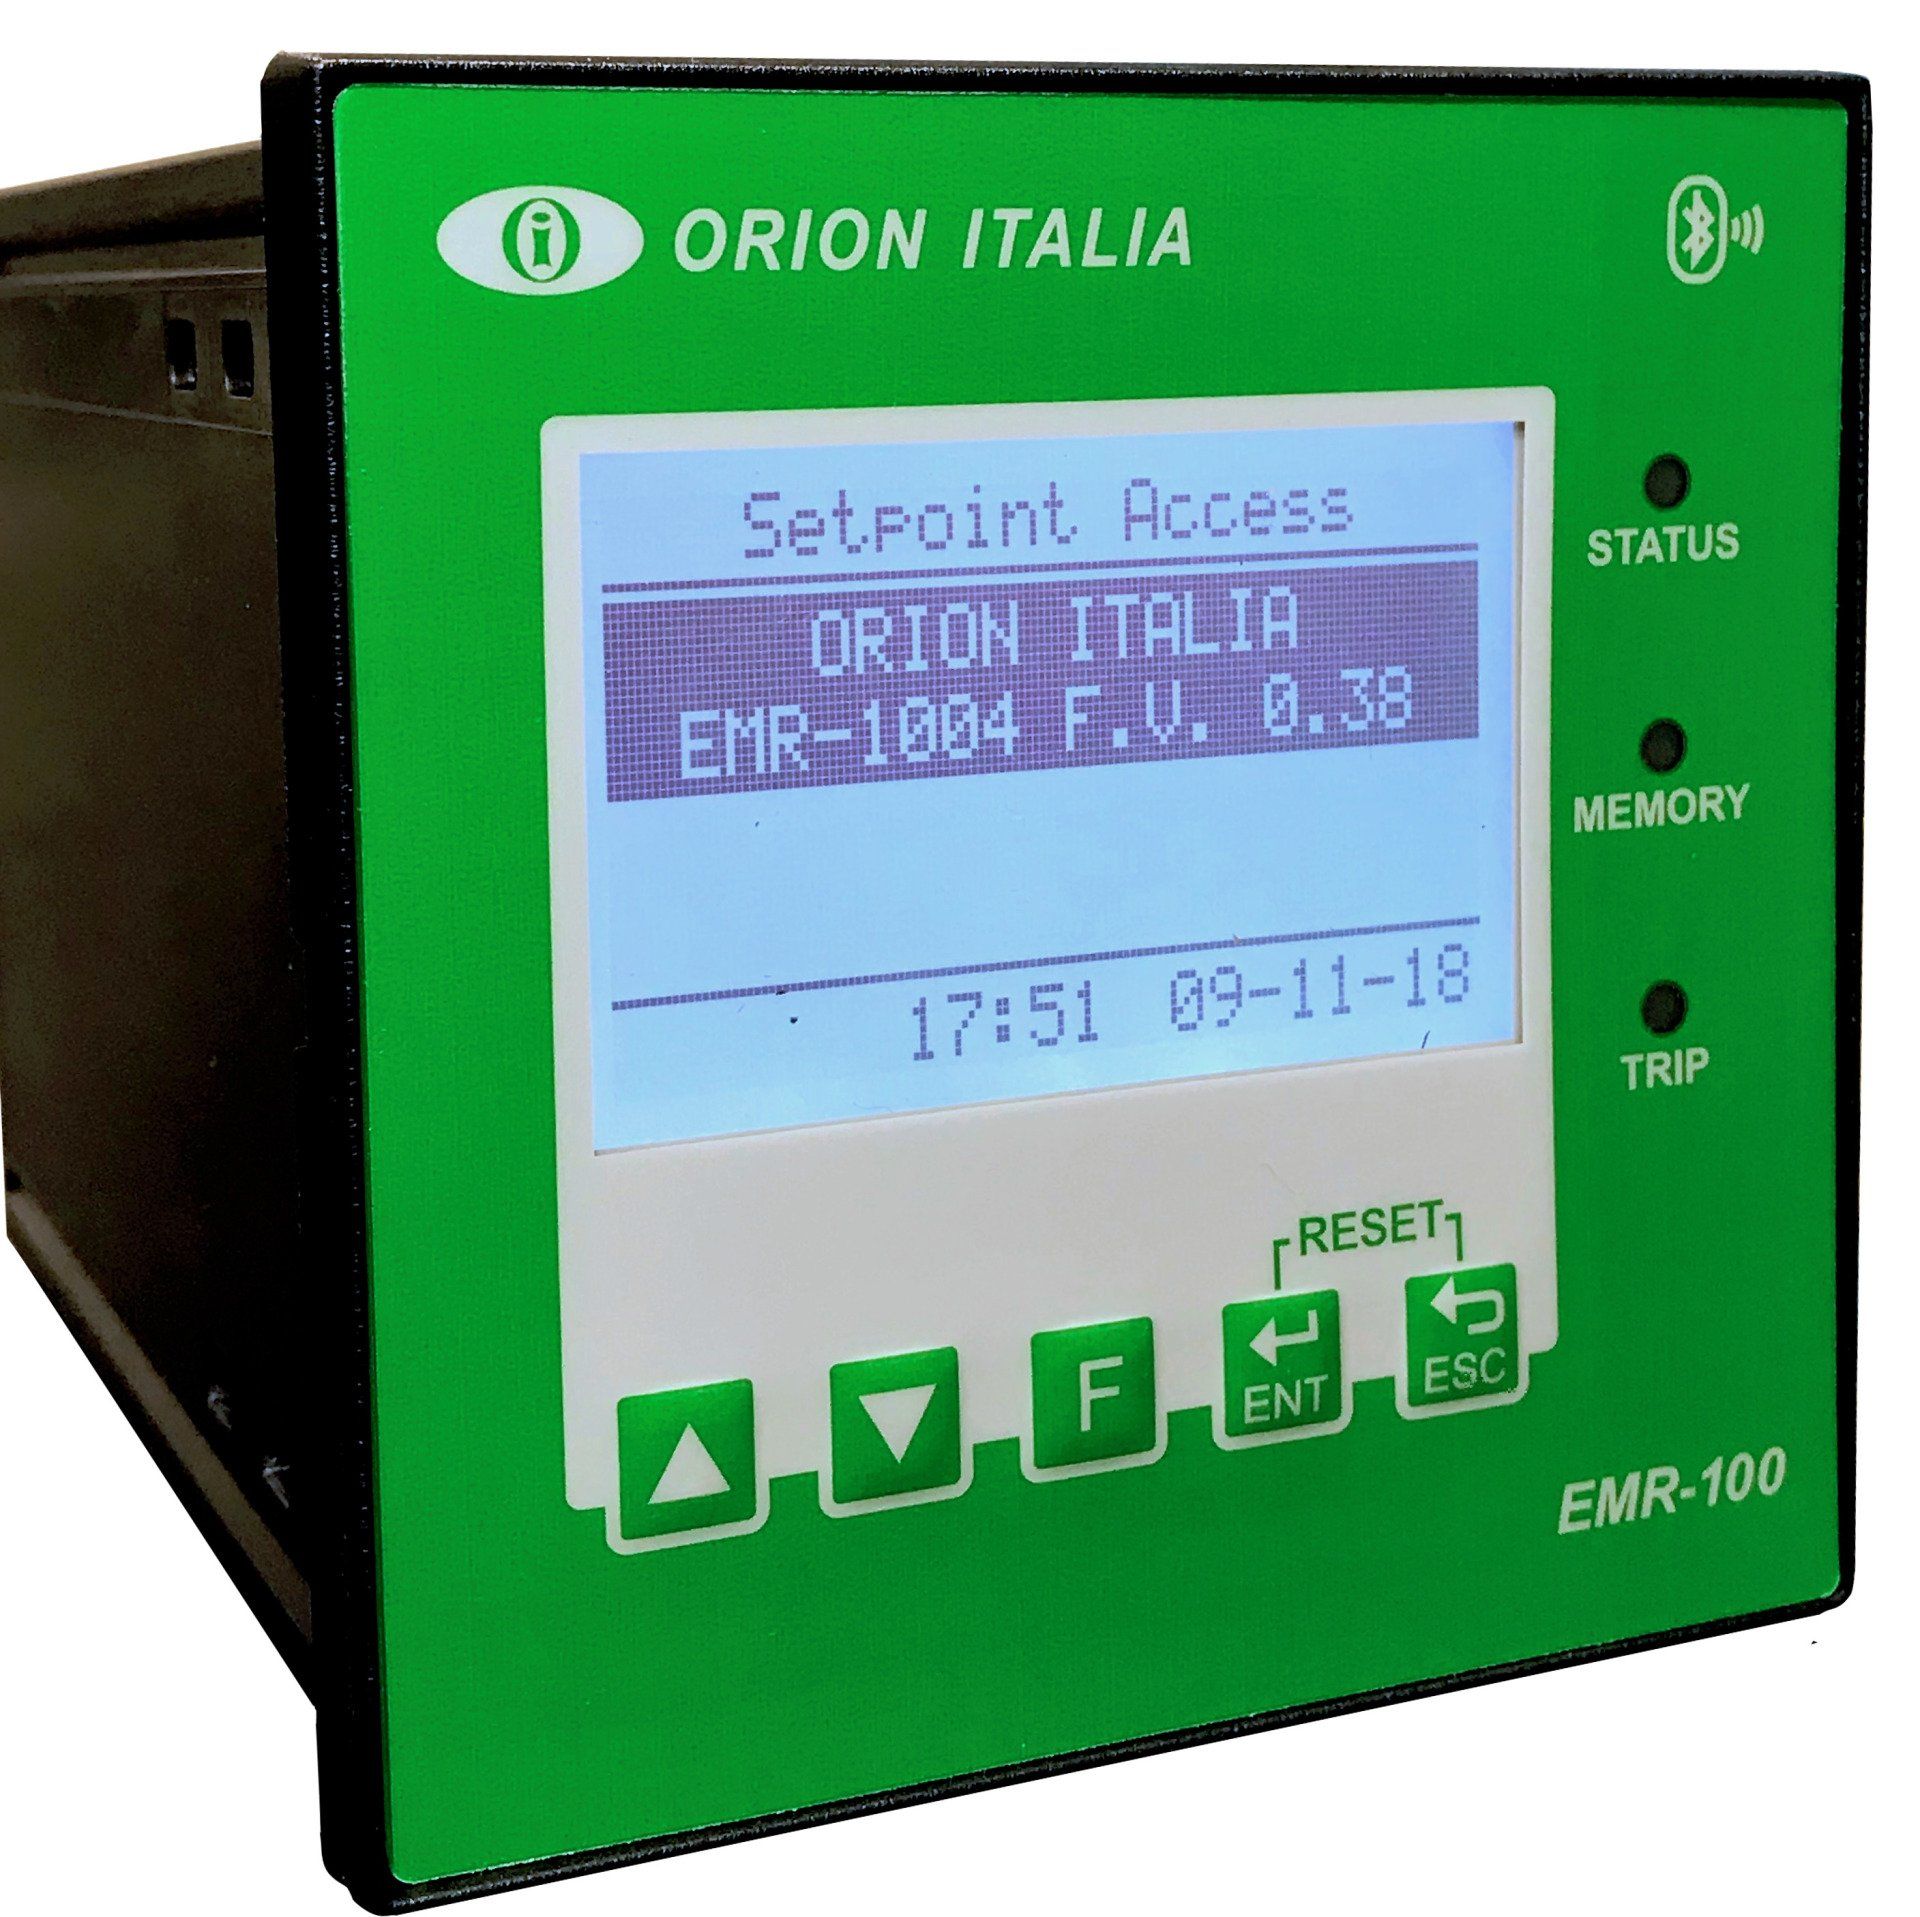 Analizador de Redes Eléctricas y Protección - EMR-100 Orion Italia